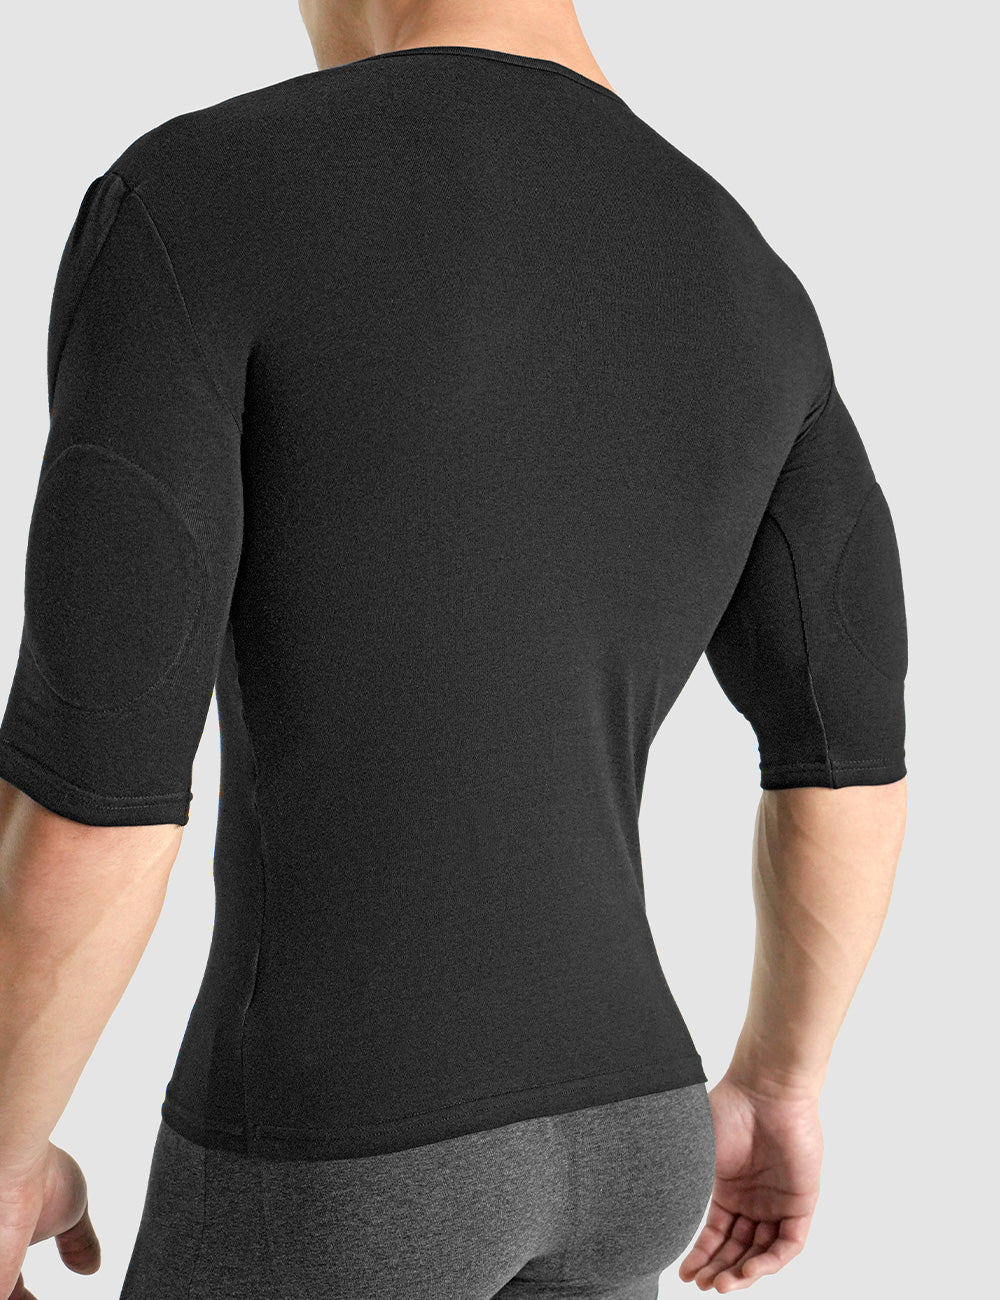 Rounderbum Padded Muscle Shirt – Rounderbum LLC